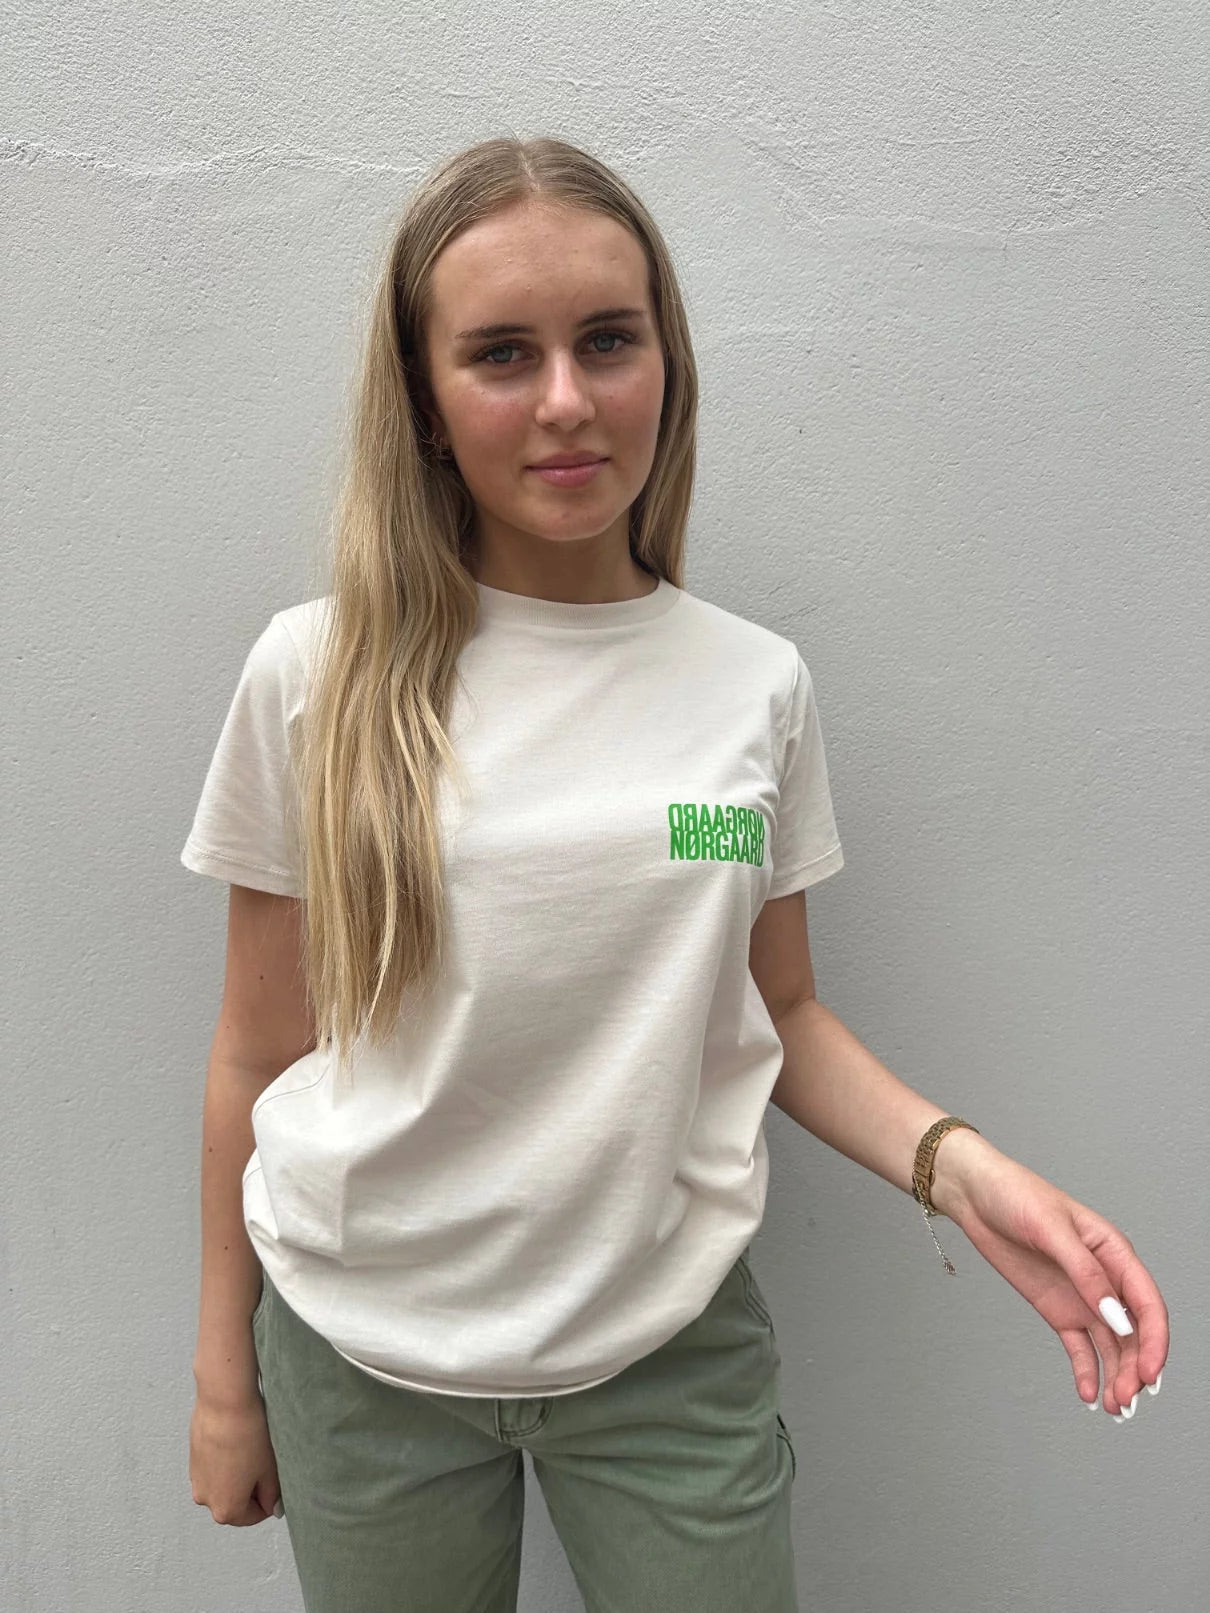 Mads Nørgaard - Single Organic Trenda T-skjorte, beige by Mads Nørgaard | stylebykul